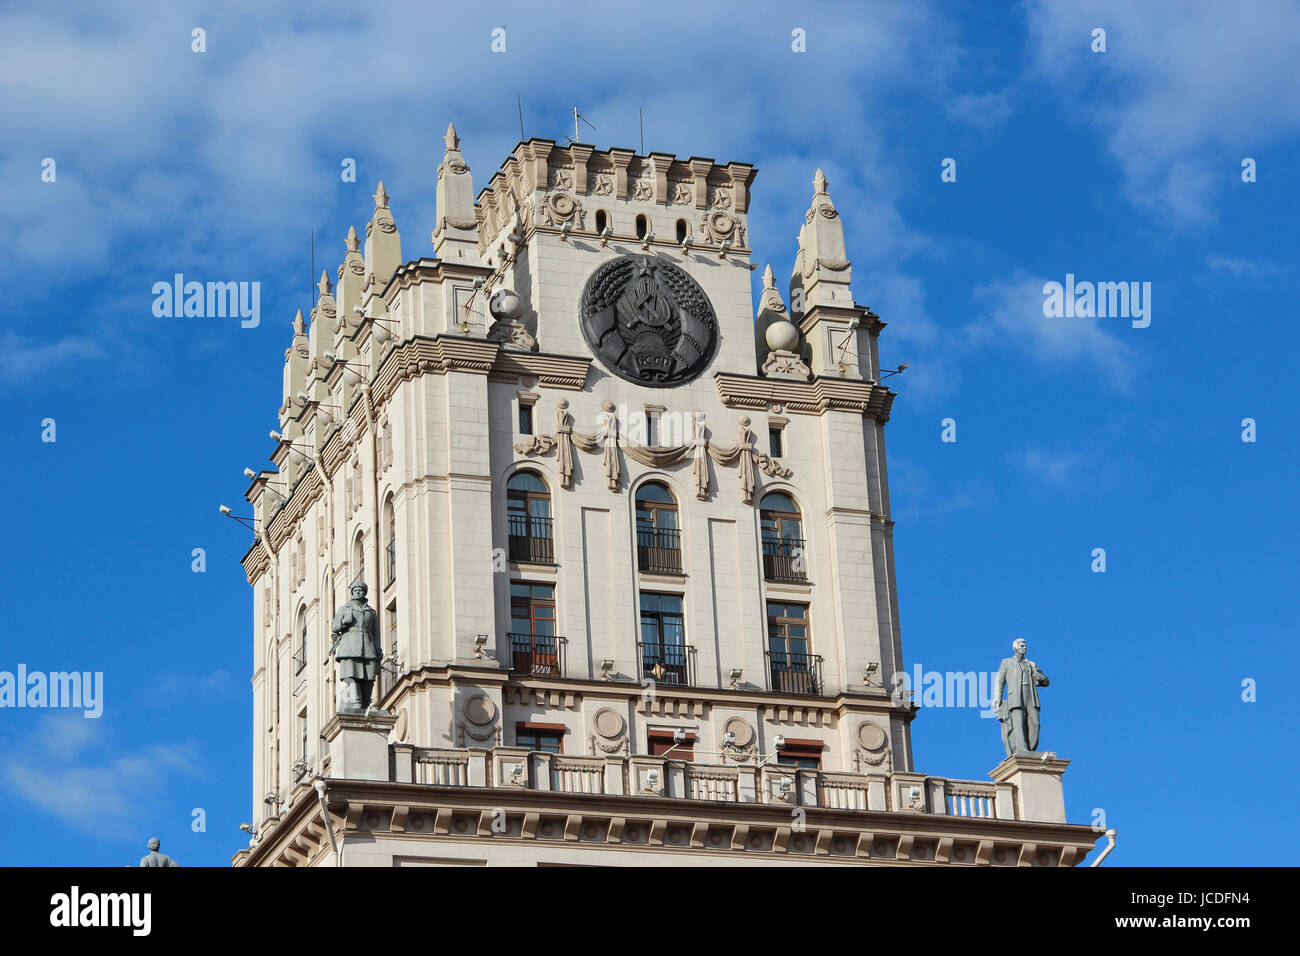 Turm im Stil von Stalins Reich auf dem Bahnhofsplatz in Minsk, Weißrussland. Stockfoto